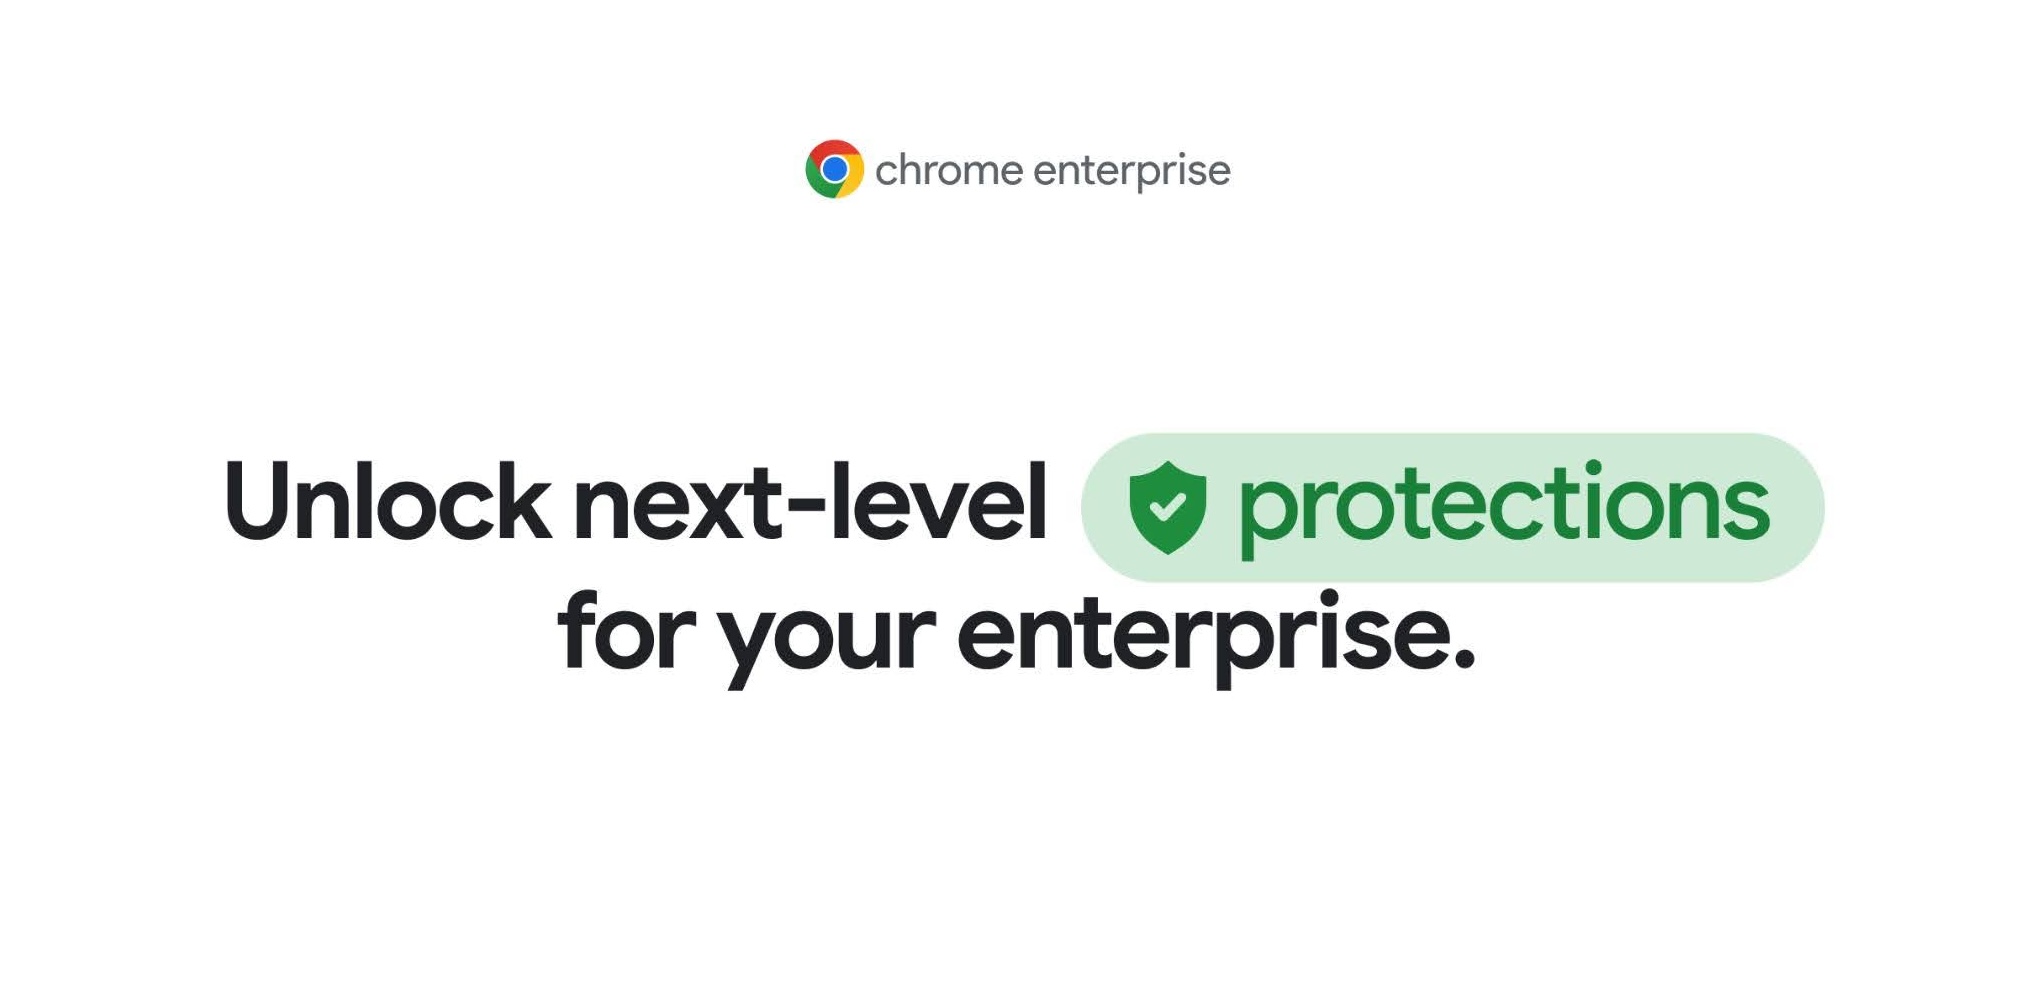 Introducing Chrome Enterprise Premium